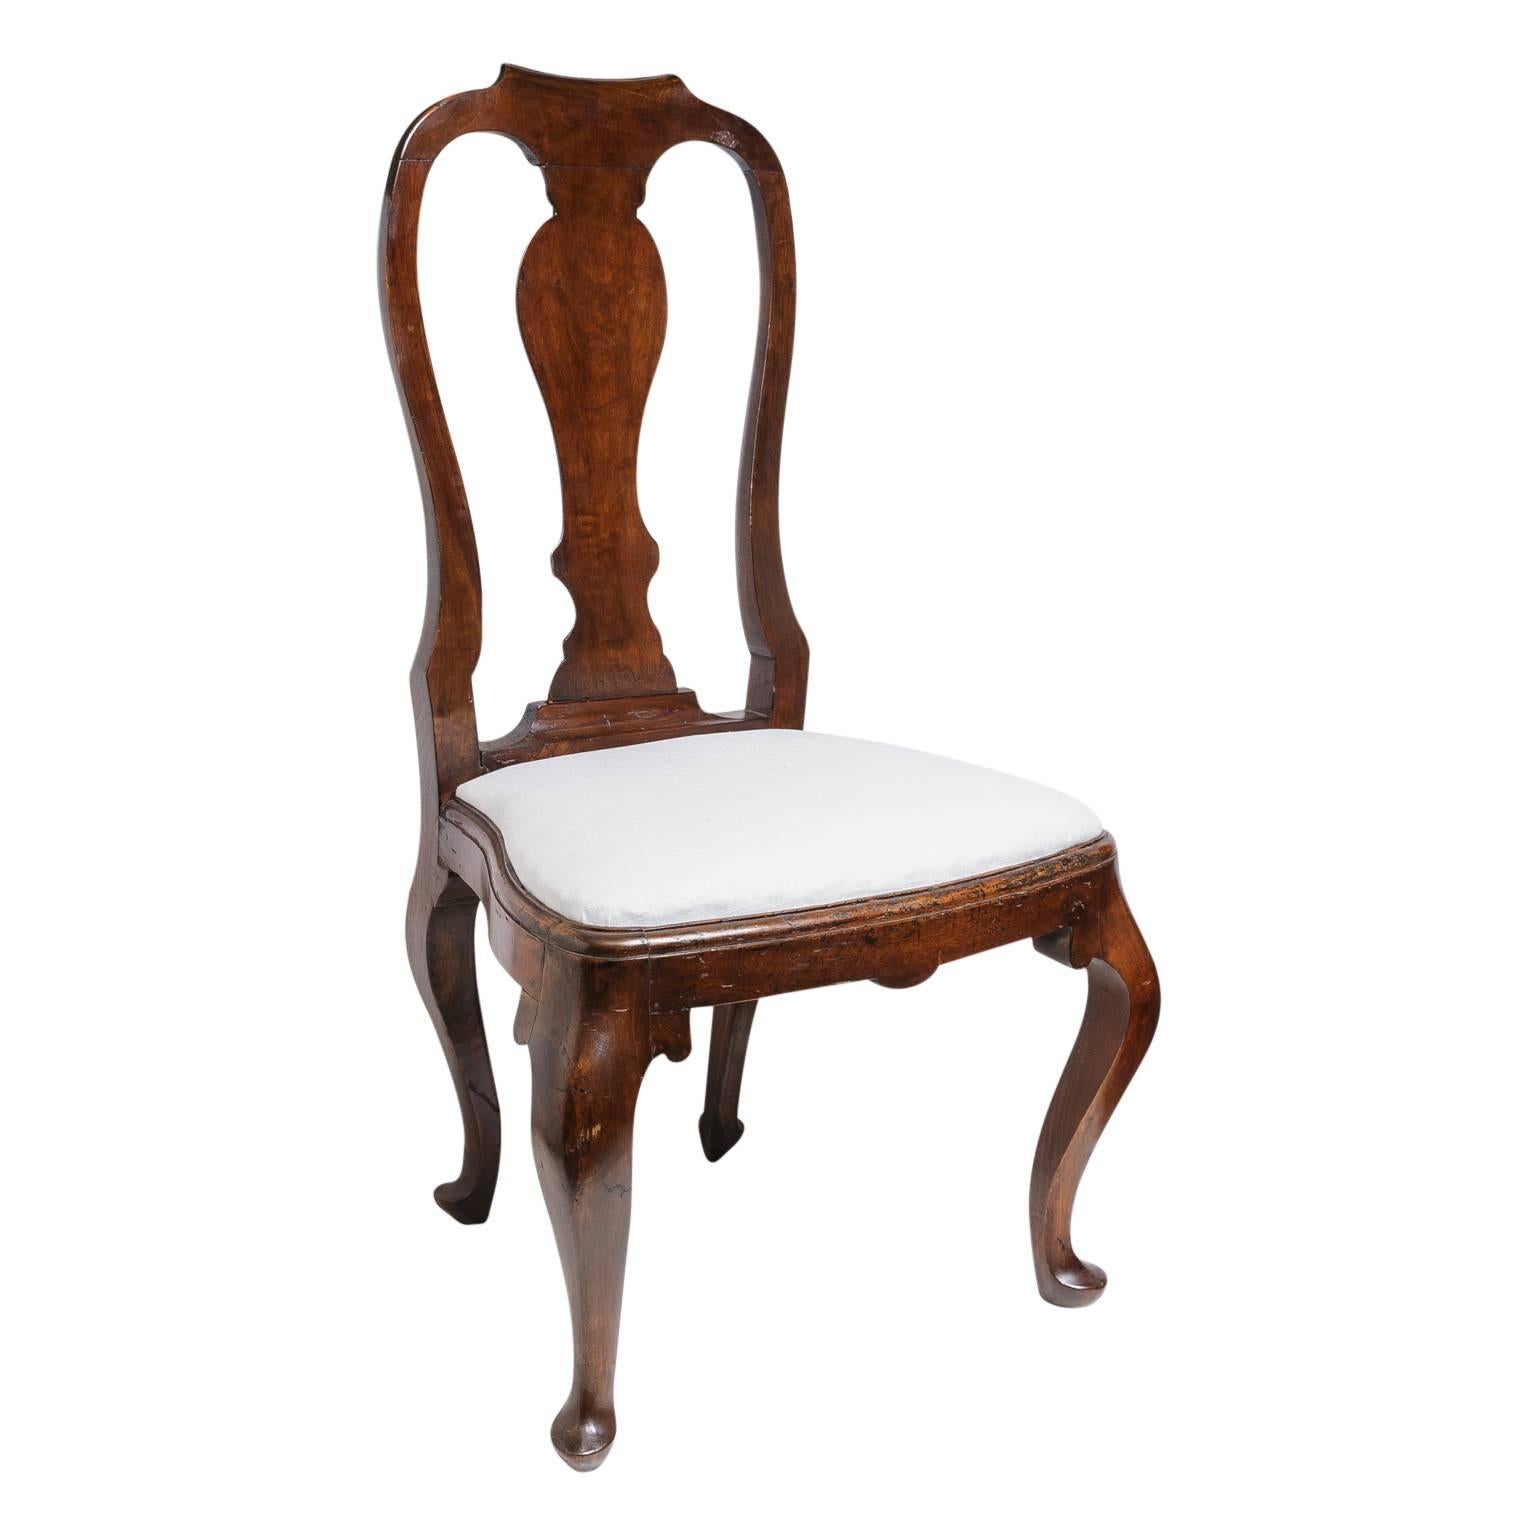 Cet ensemble de quatre chaises latérales de salle à manger de style Queen Anne date du milieu ou de la fin du XIXe siècle. Les cadres semblent être en noyer et sont sculptés à la main avec un pied cabriolet, un dossier serpentin et un siège en forme